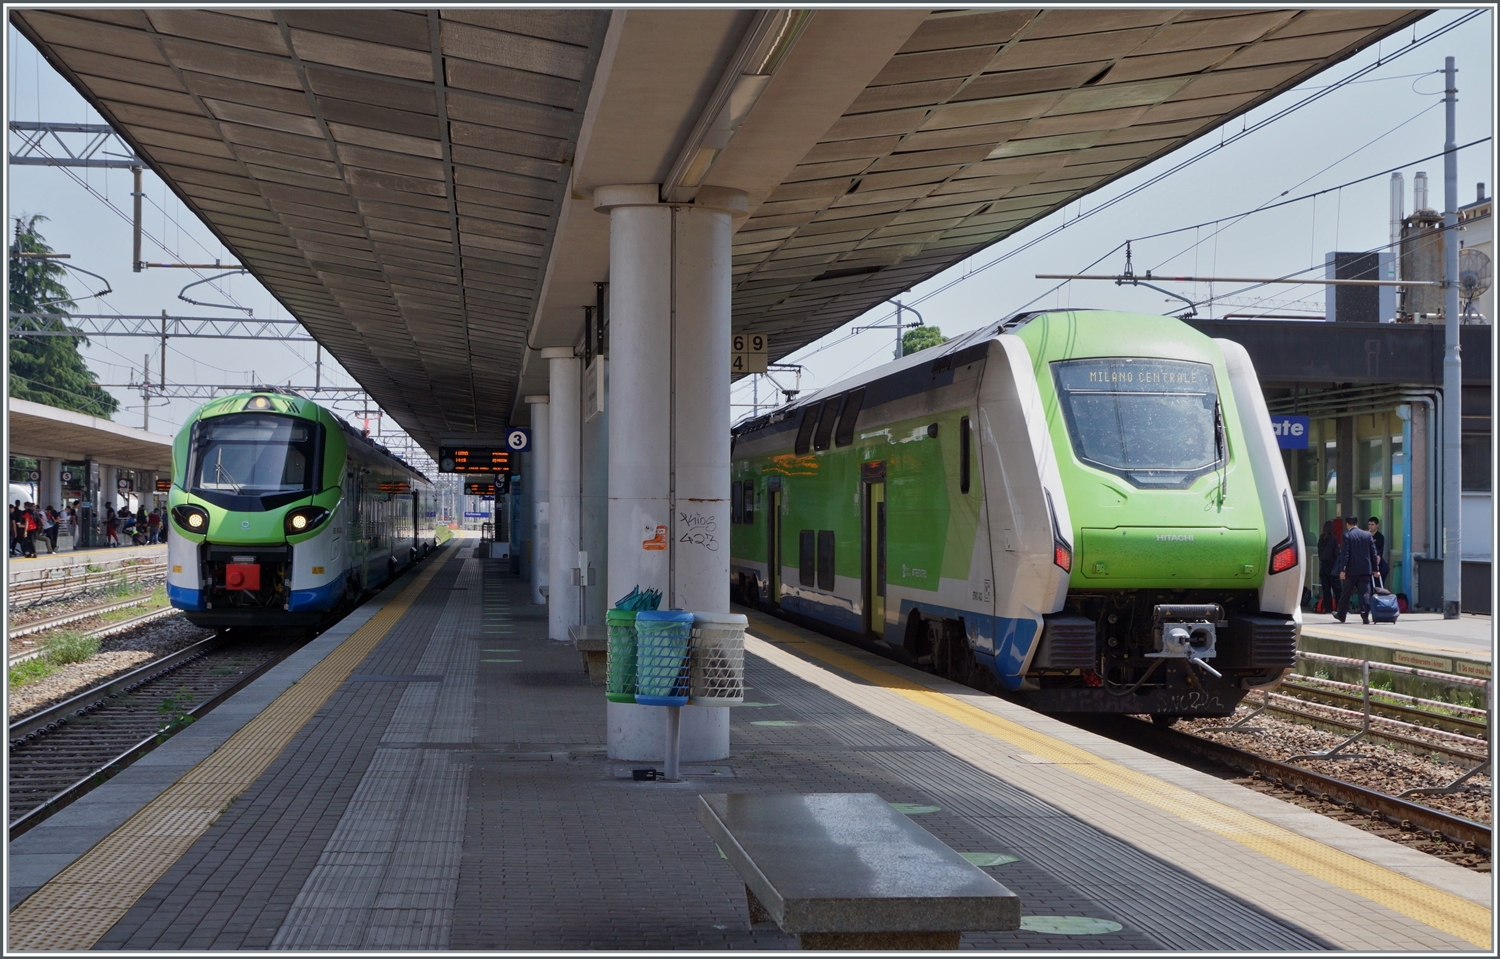 Moderner Trenord Verkehr: der Trenord ETR 103 117 wartet auf die Abfarht nach Luino und rechts im Bild erreicht ein ETR 421 von Domodossla kommend den Bahnhof von Gallarate. 

23. Mai 2023